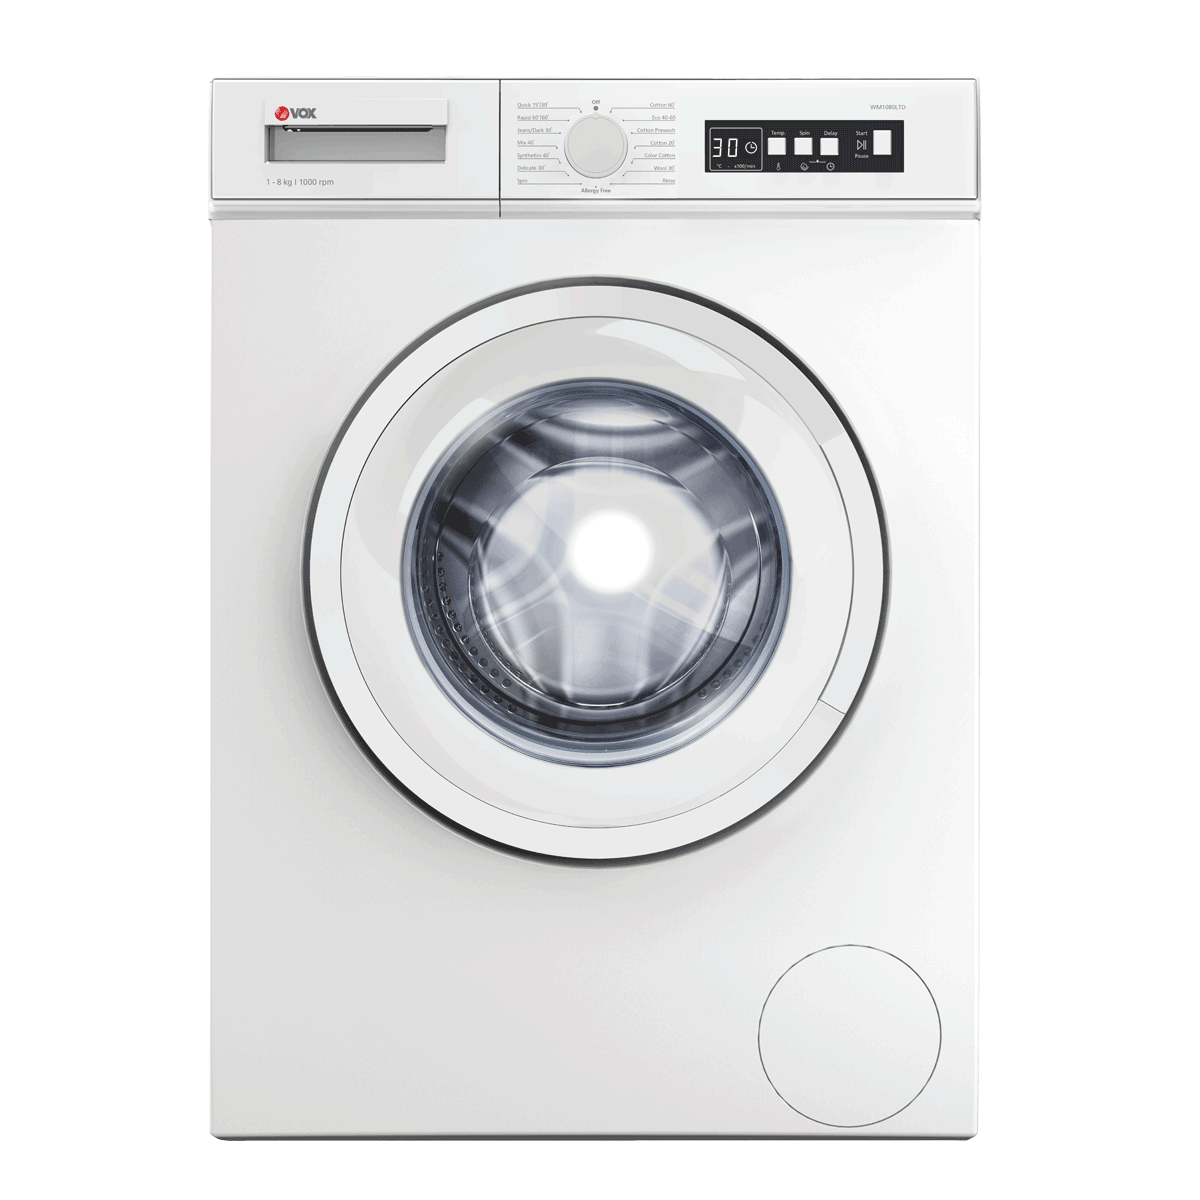 Washing machine WM1080-LTD 